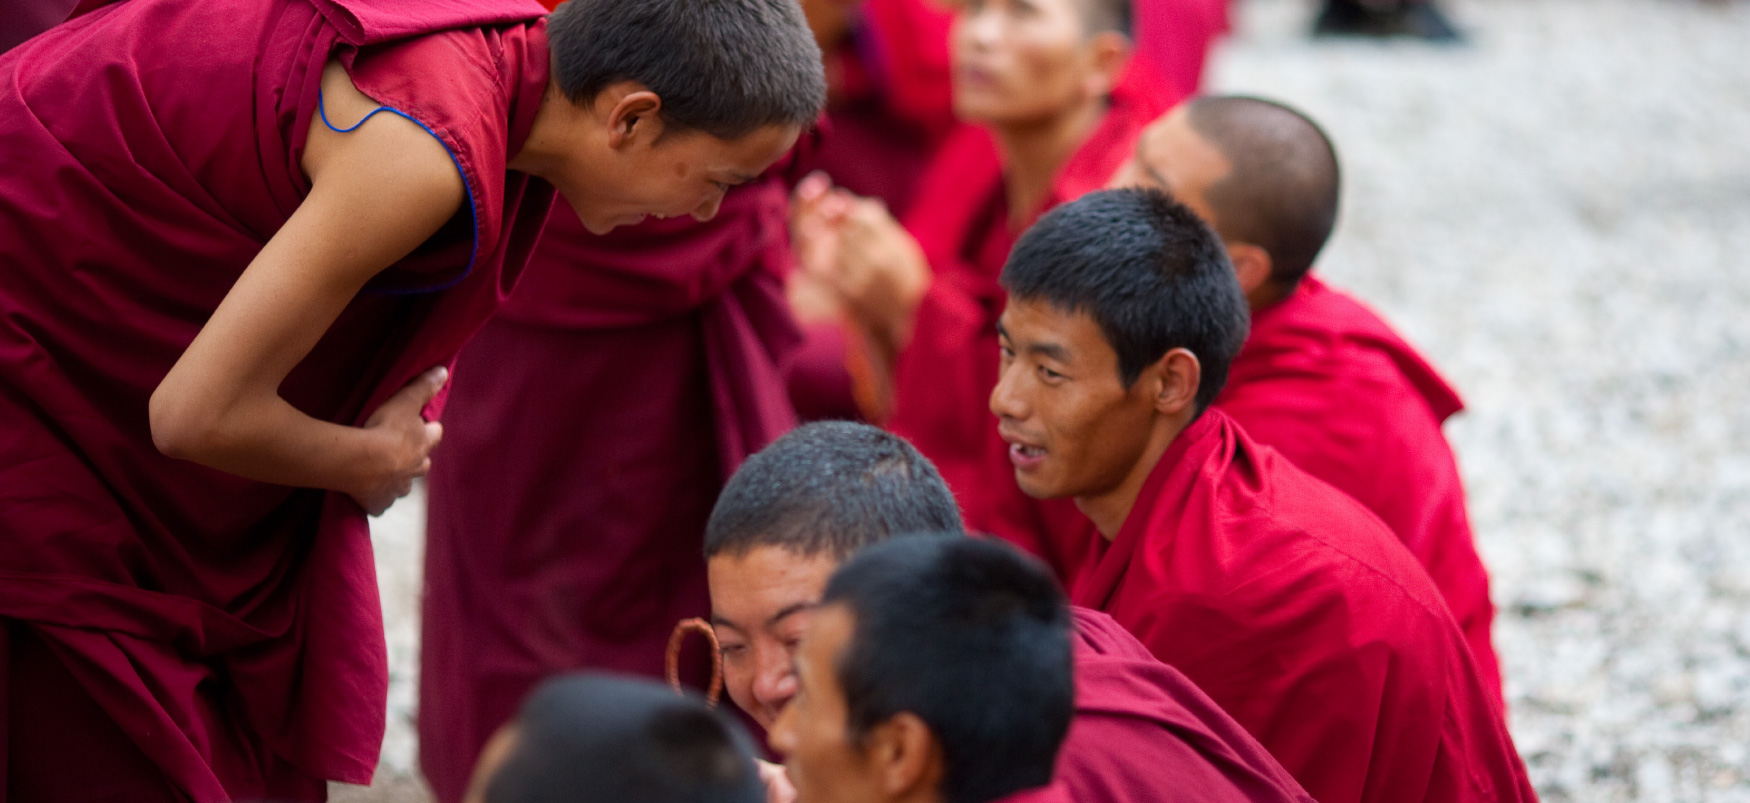 Un moine bouddhiste vêtu de rouge se penche pour parler avec d'autres moines vêtus de rouge.